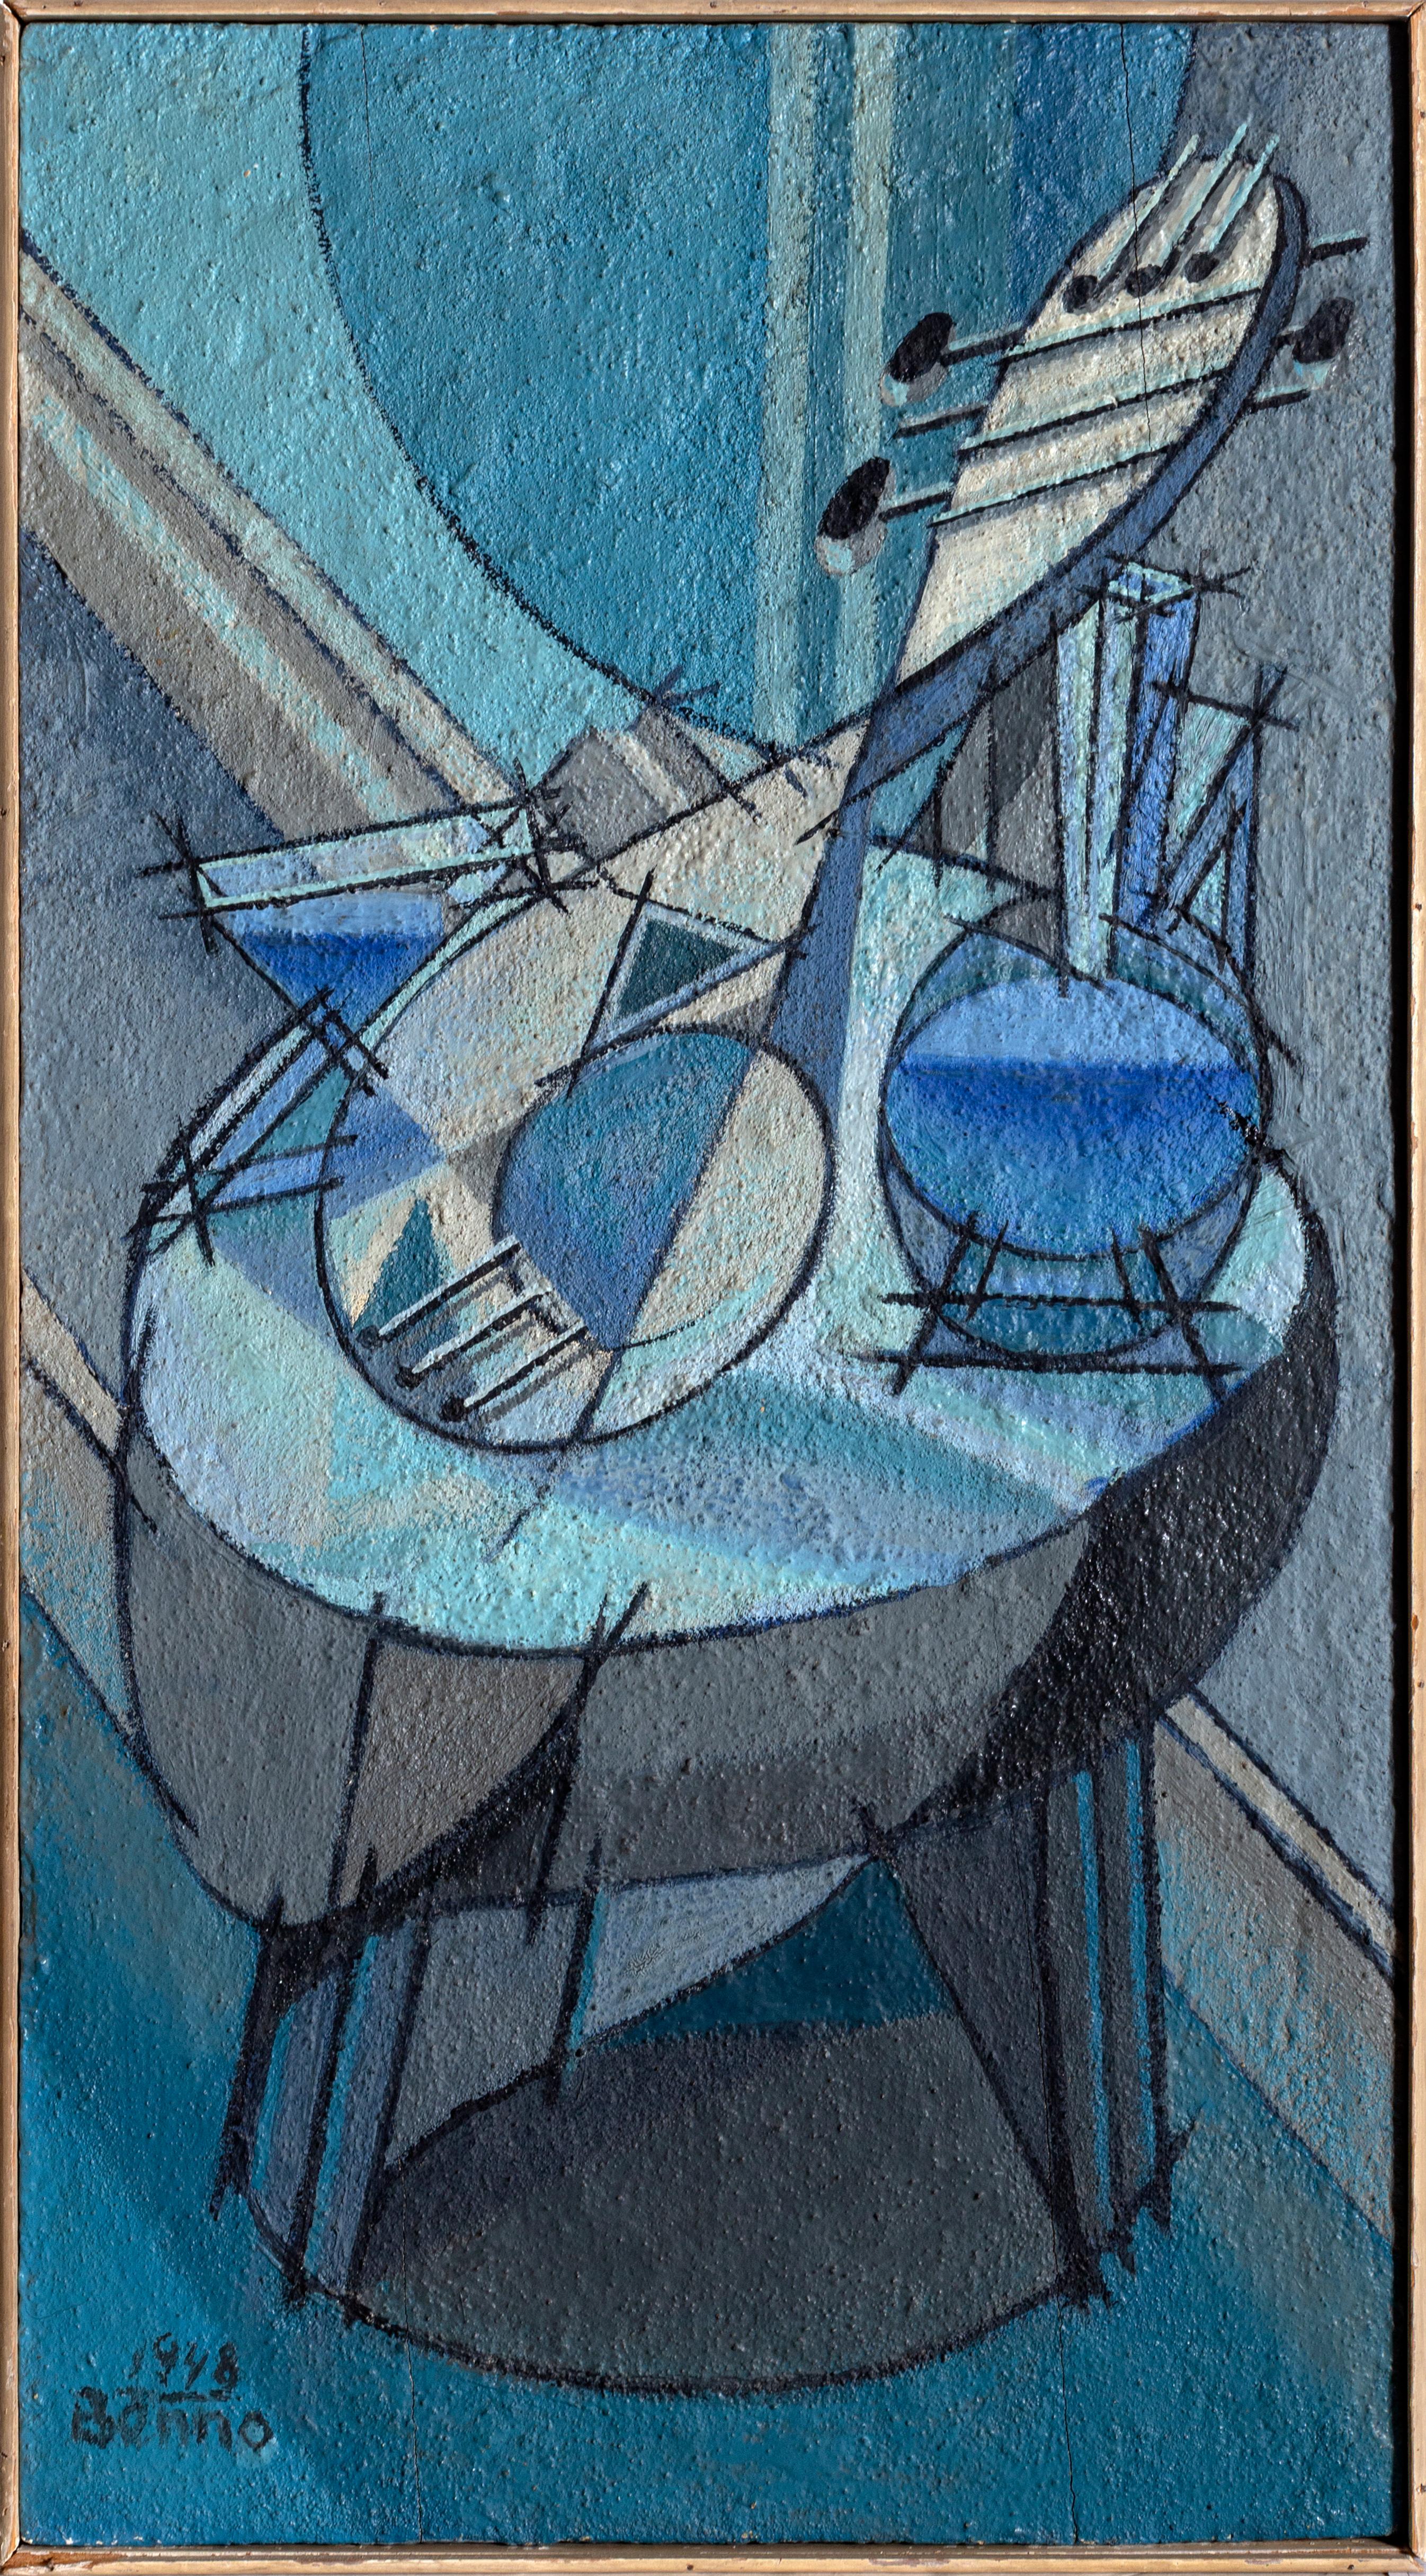 The Isometric Quartet, modernes kubistisches Gemälde von Benjamin Benno, 1948